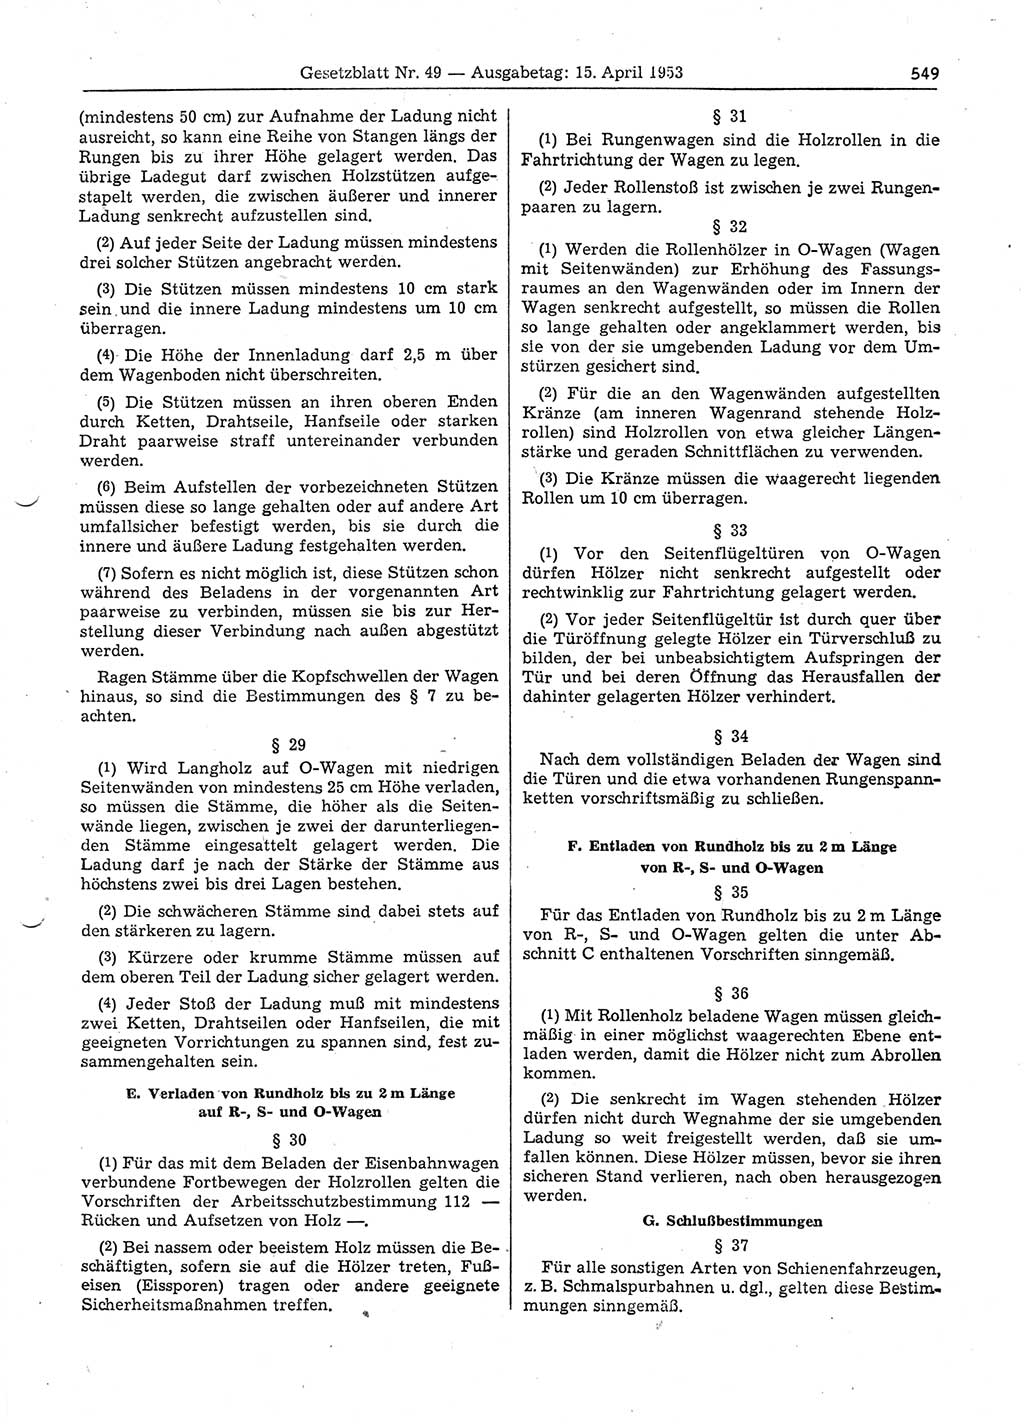 Gesetzblatt (GBl.) der Deutschen Demokratischen Republik (DDR) 1953, Seite 549 (GBl. DDR 1953, S. 549)